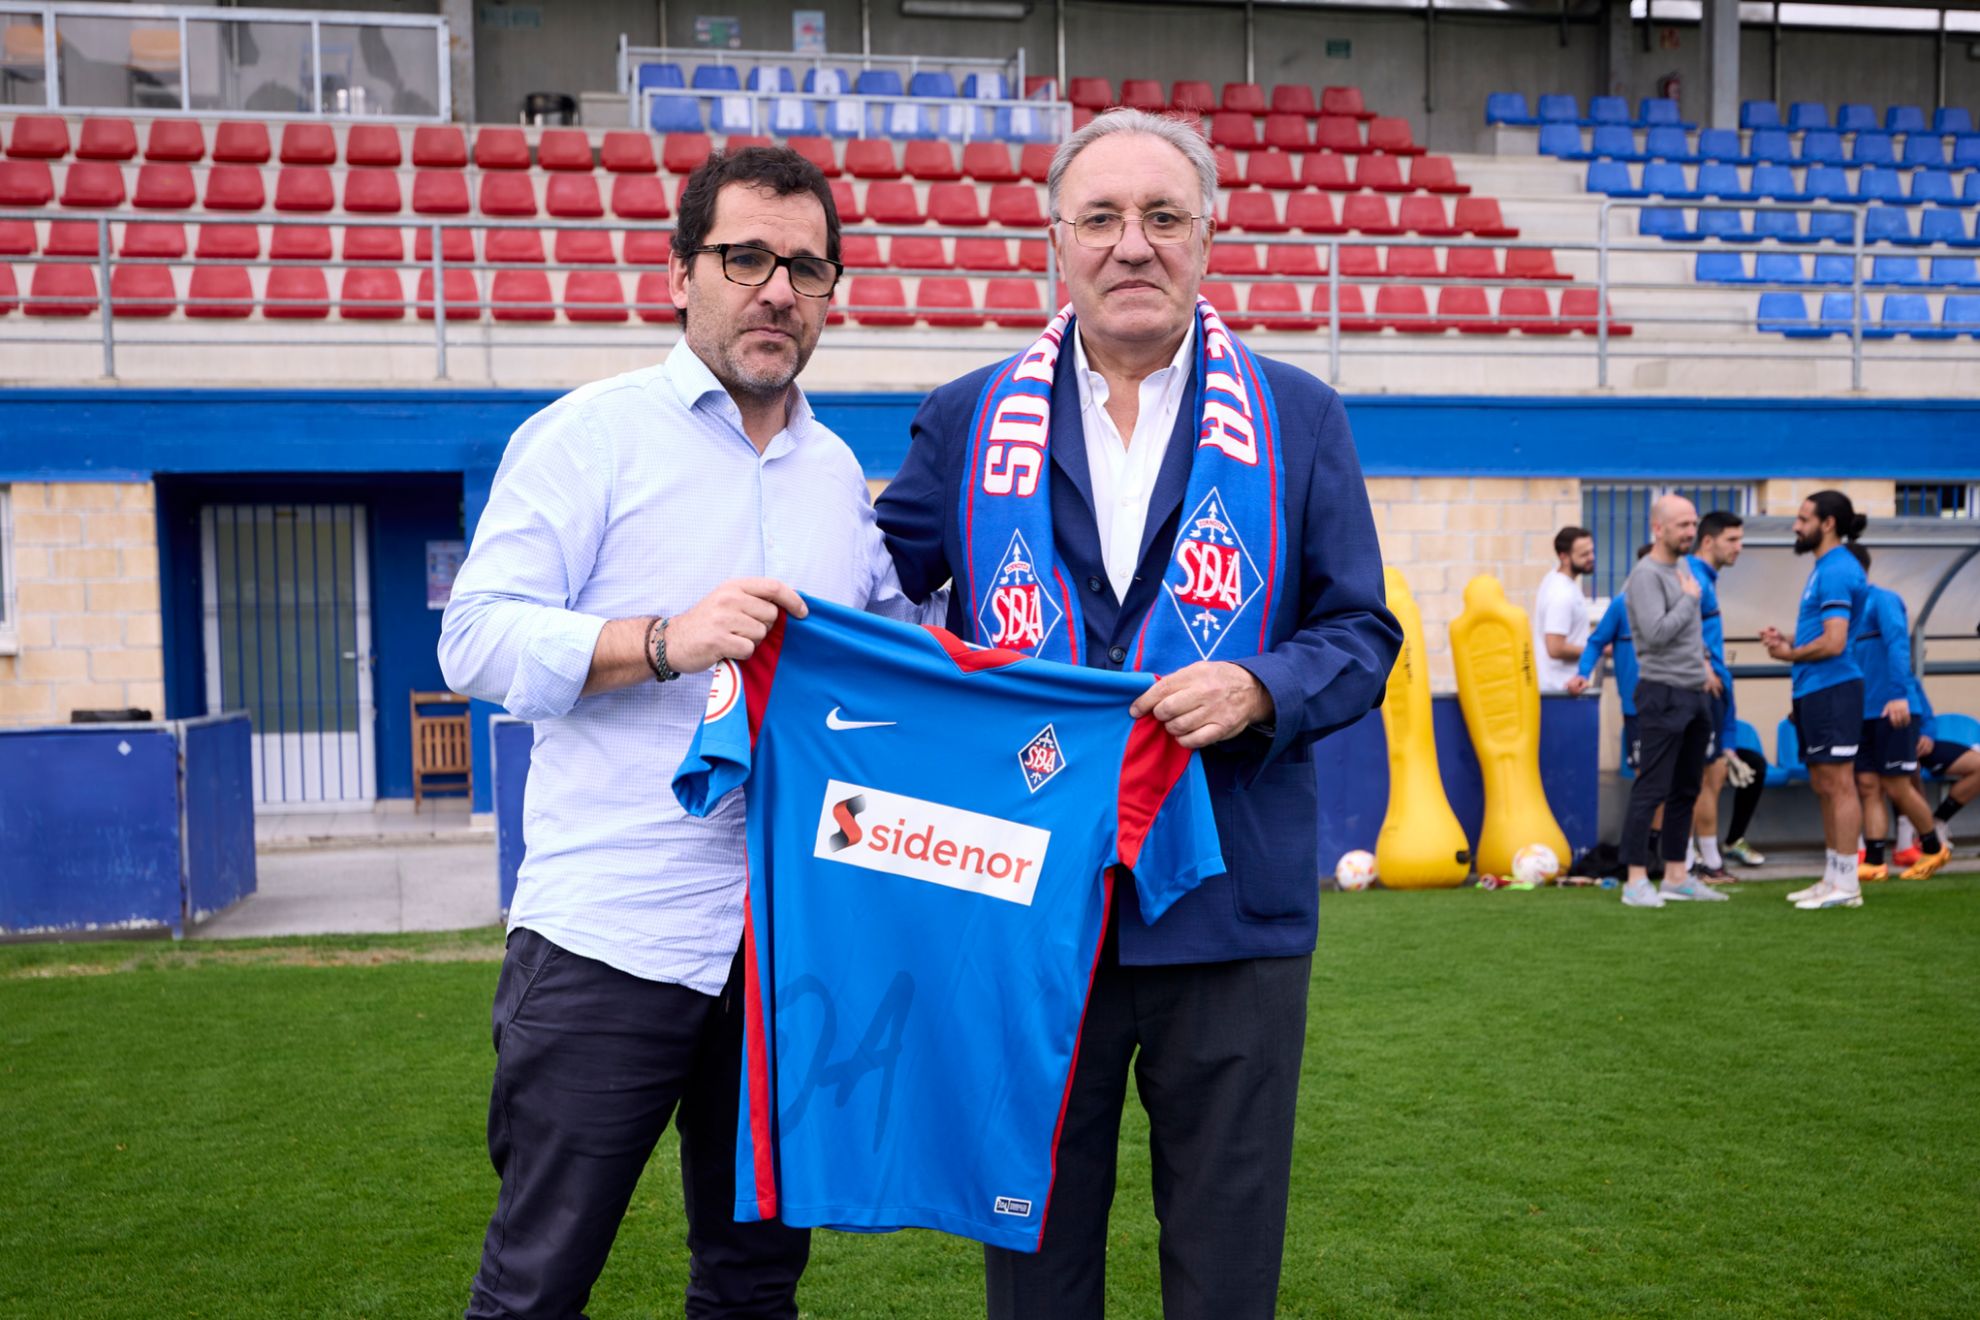 El presidente Jon Larrea, a la izquierda, junto a Jos Antonio Jainaga, presidente de Sidenor, uno de los patrocinadores del club.